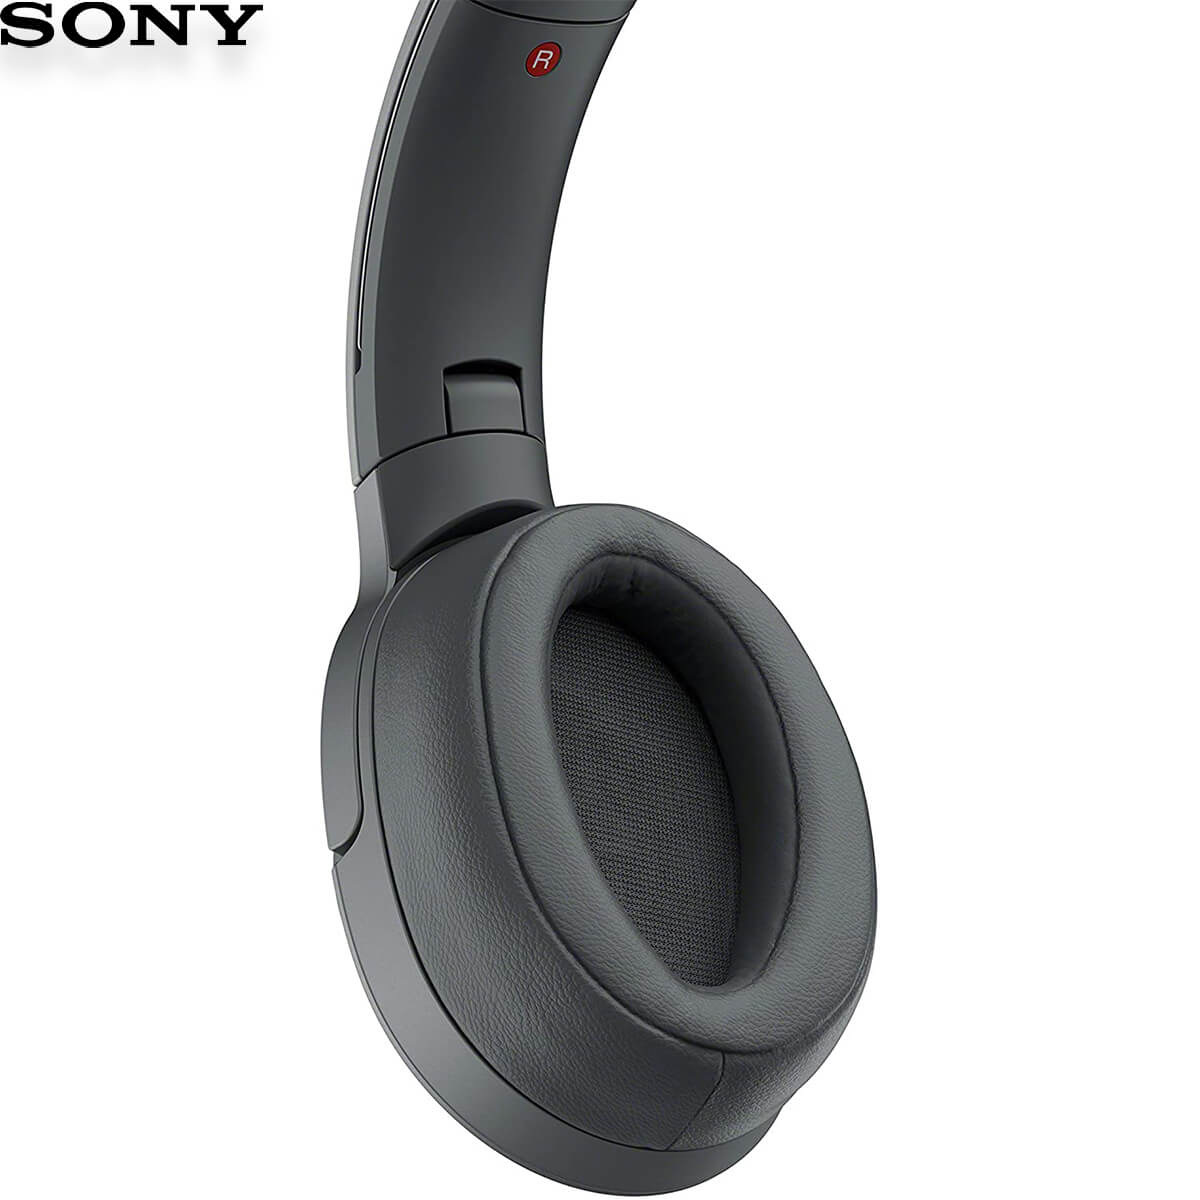 Tai nghe chụp tai SONY WH-H900N Không Dây chống ồn chính hãng giá rẻ